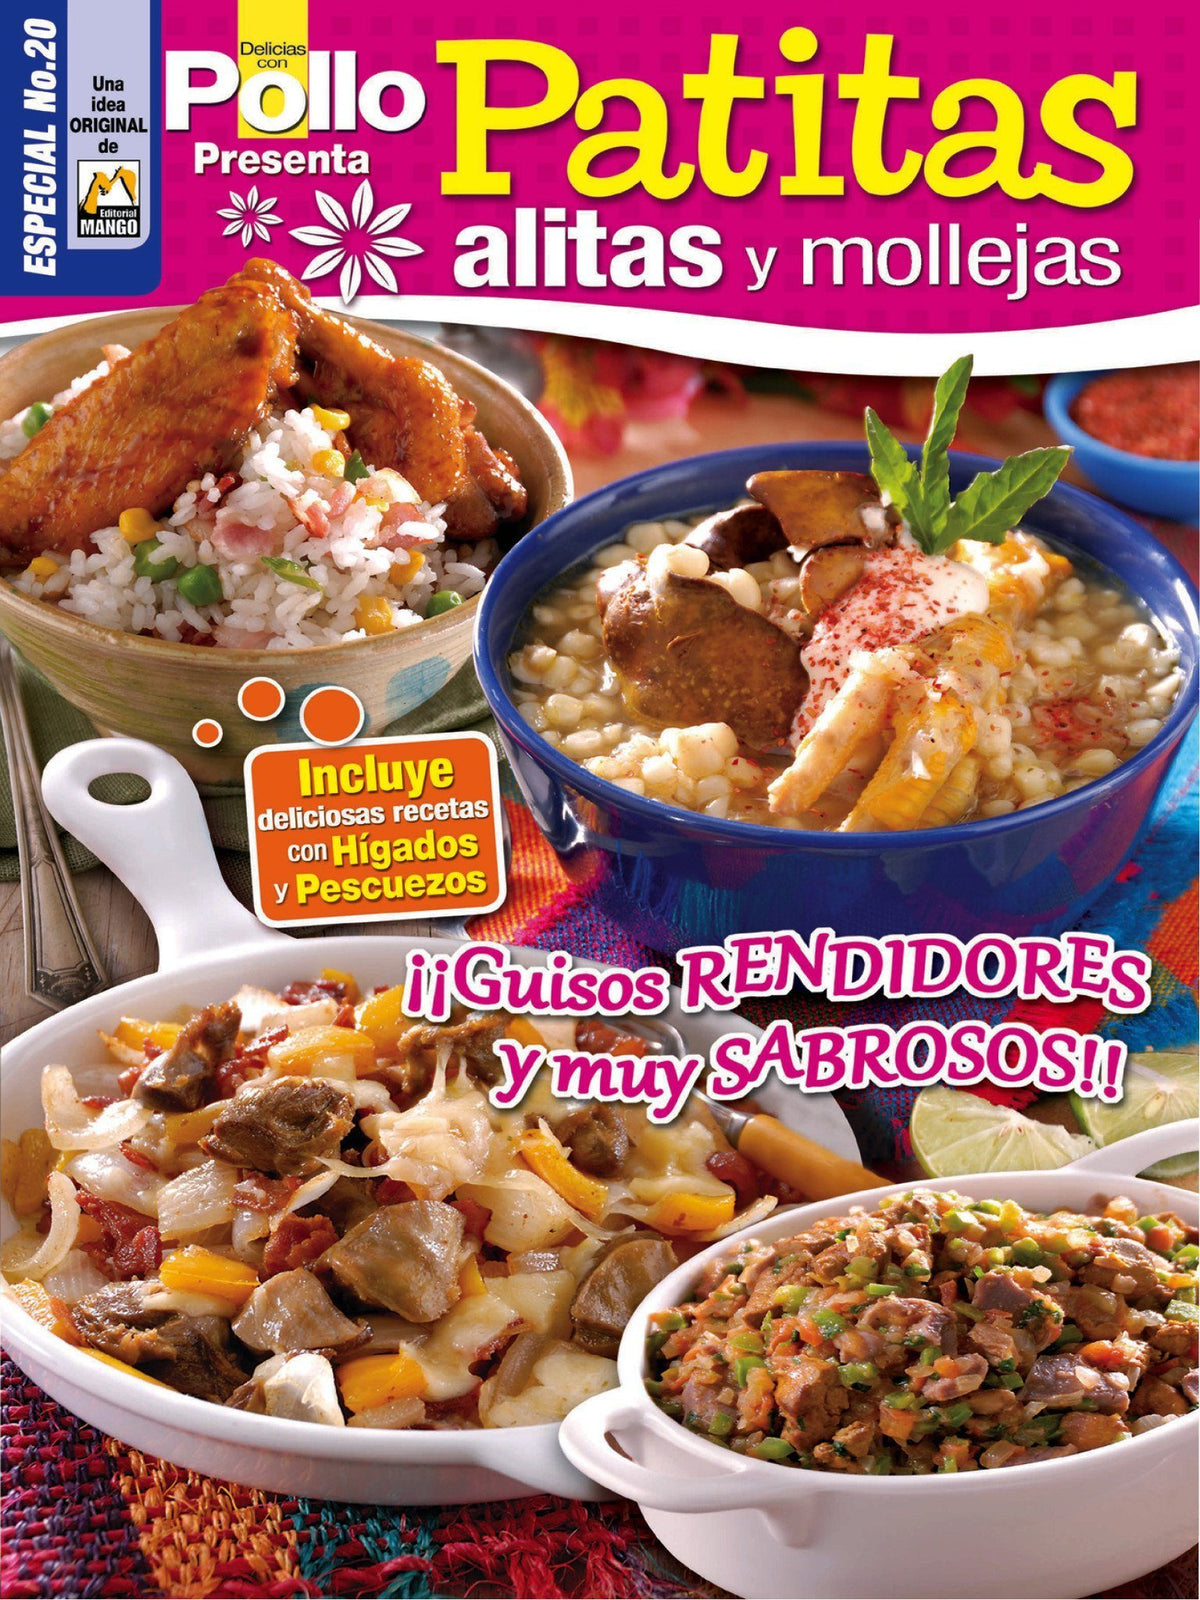 Delicias con Pollo Especial 20 - Patitas, alitas y mollejas - Formato Digital - ToukanMango